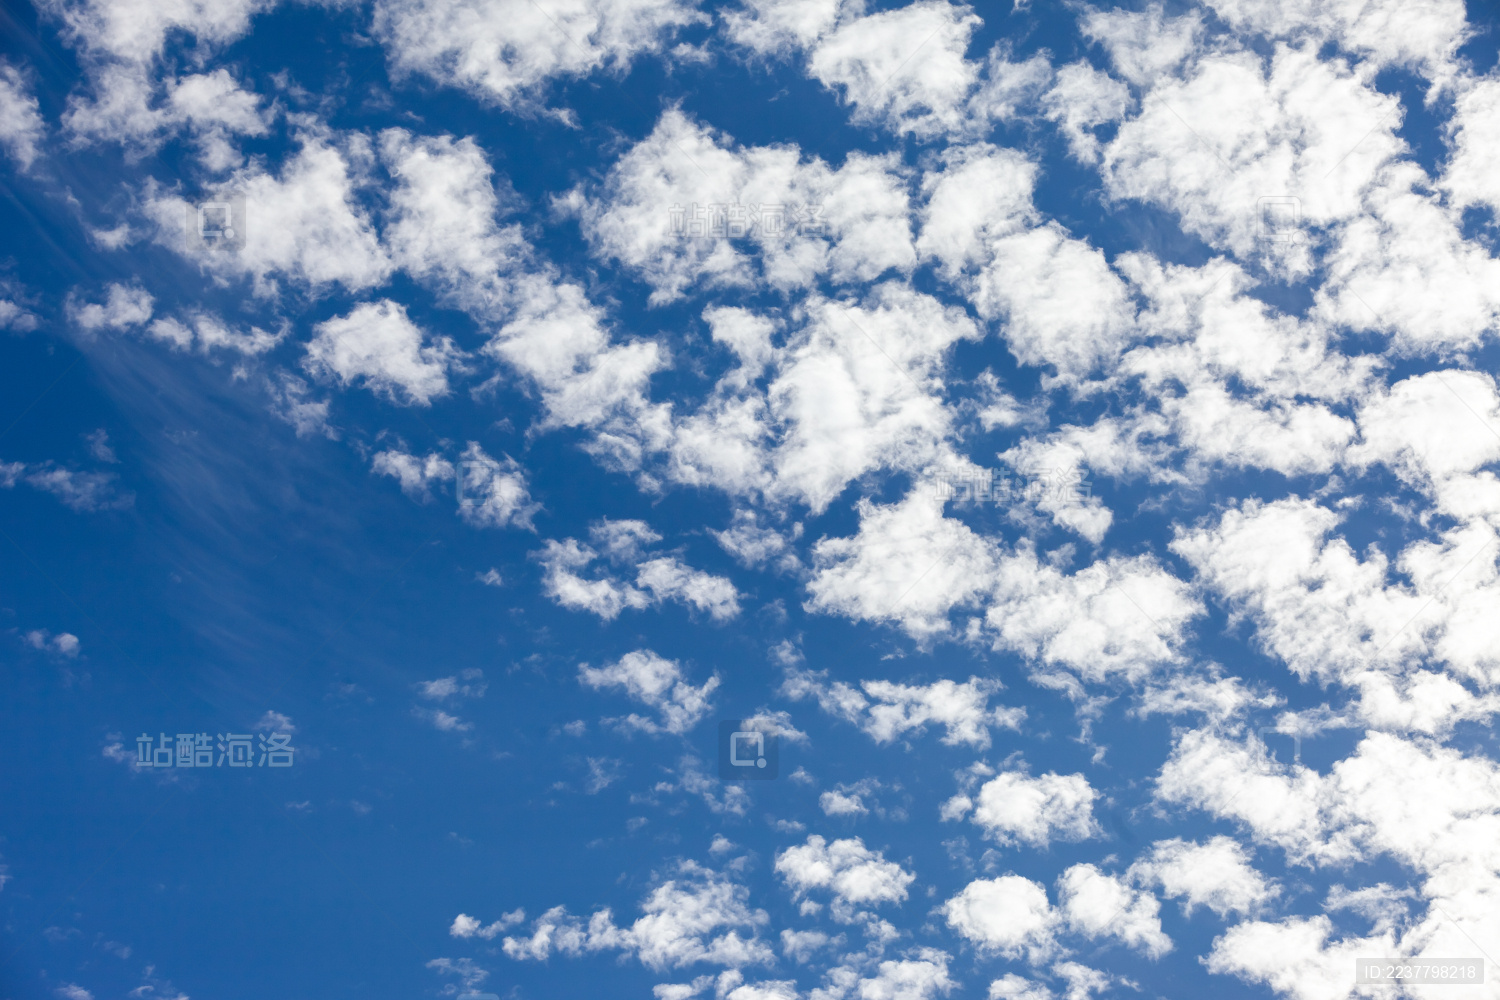 下午六点多的 像棉花糖一样的云满满的宫崎骏动漫画风……